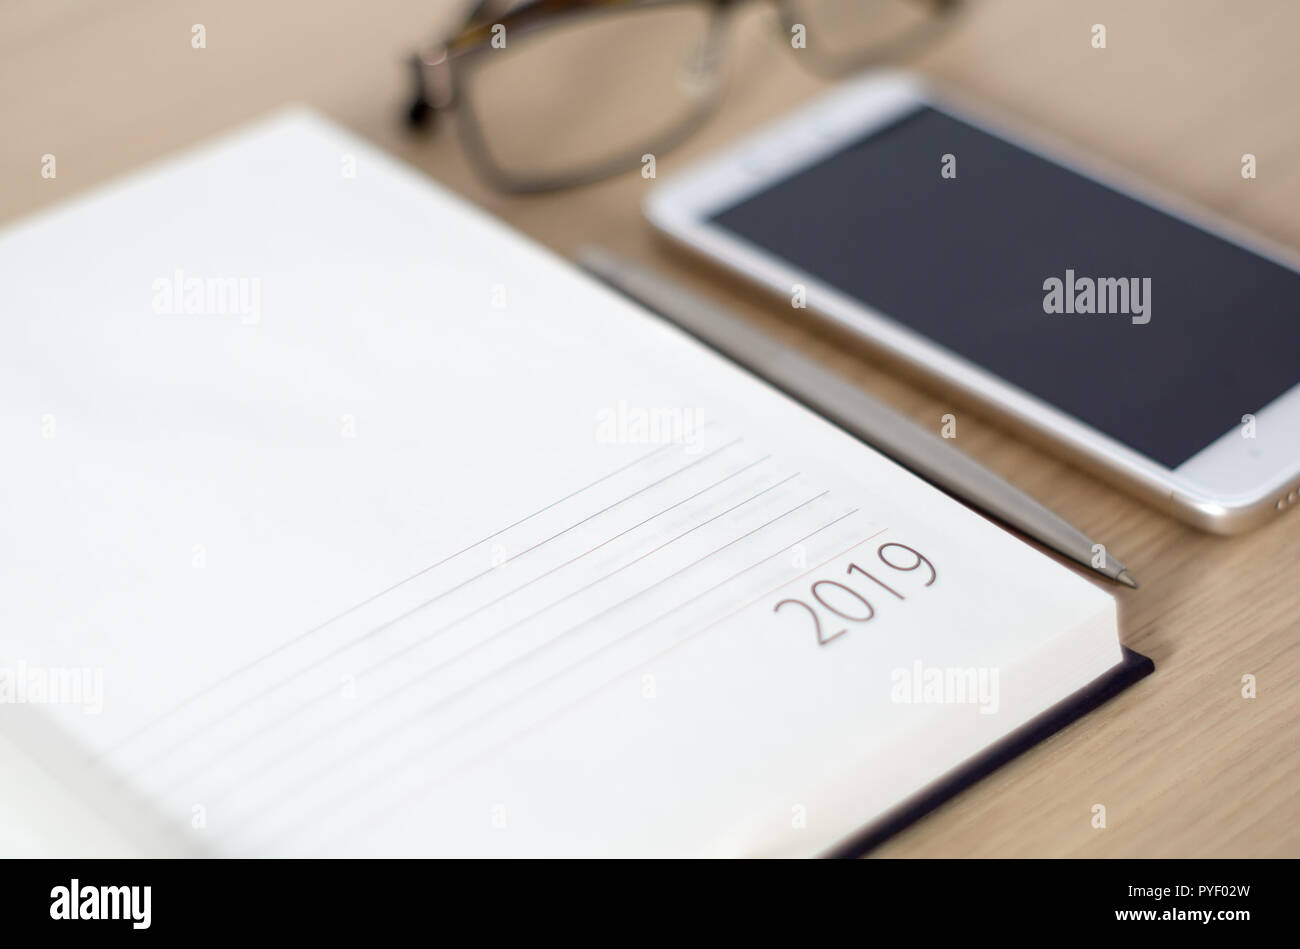 Anno Nuovo 2019 office organizer Calendario, smartphone, bicchieri e sliver penna a sfera sulla scrivania in legno. Immagine con copia spazio. Messa a fuoco selettiva. Foto Stock